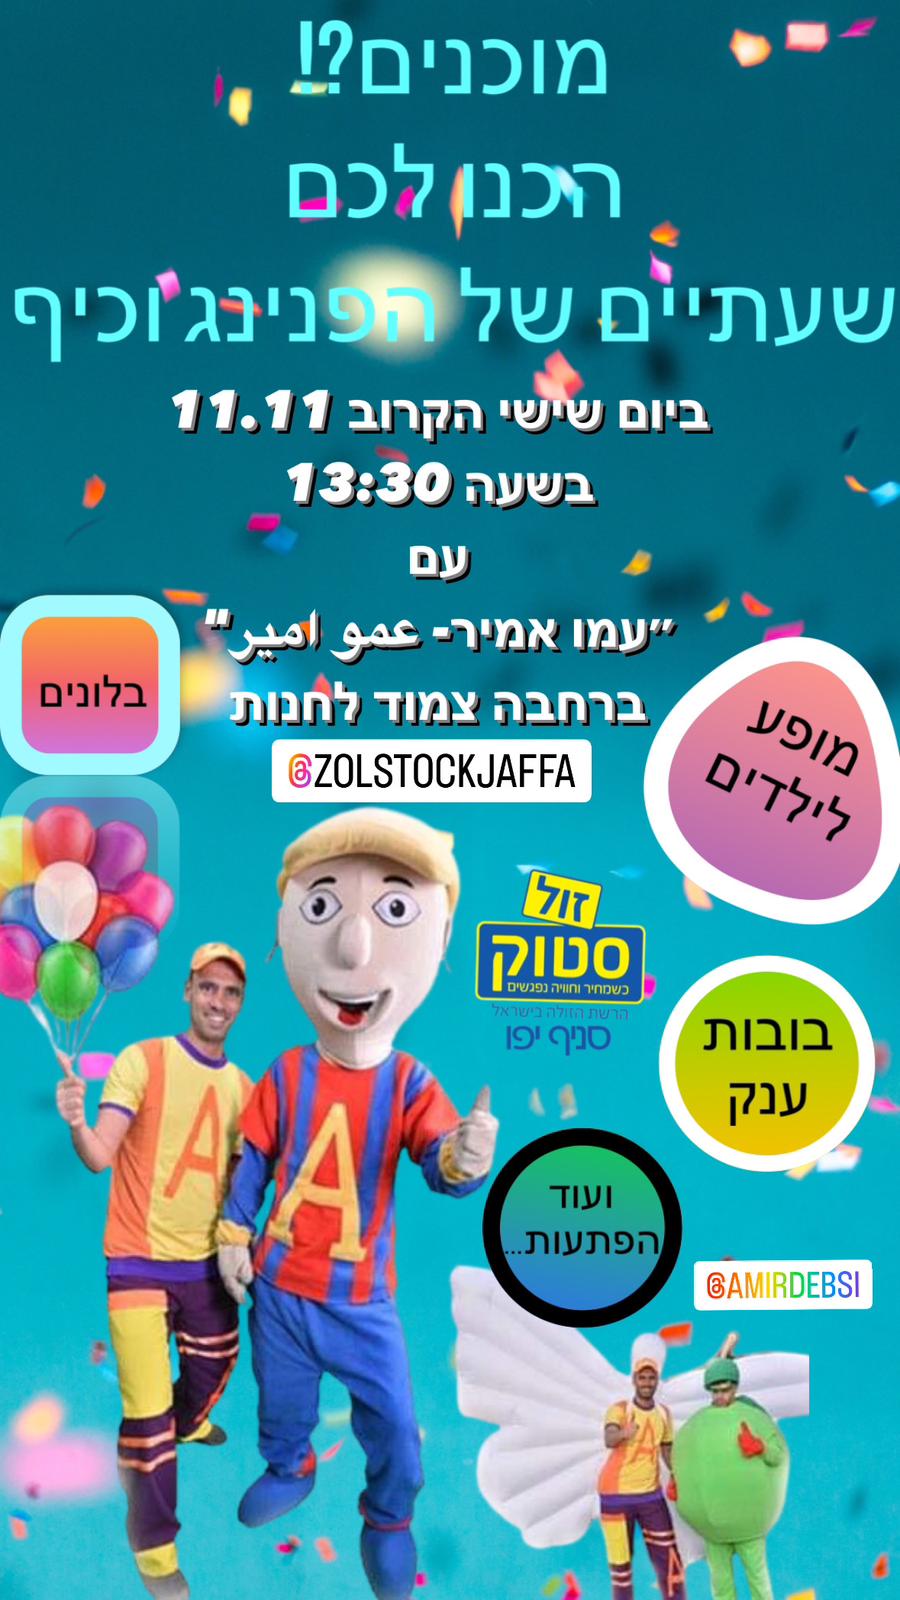 غداً: دعوة أطفال يافا لفعاليات ترفيهية برعاية زول ستوك